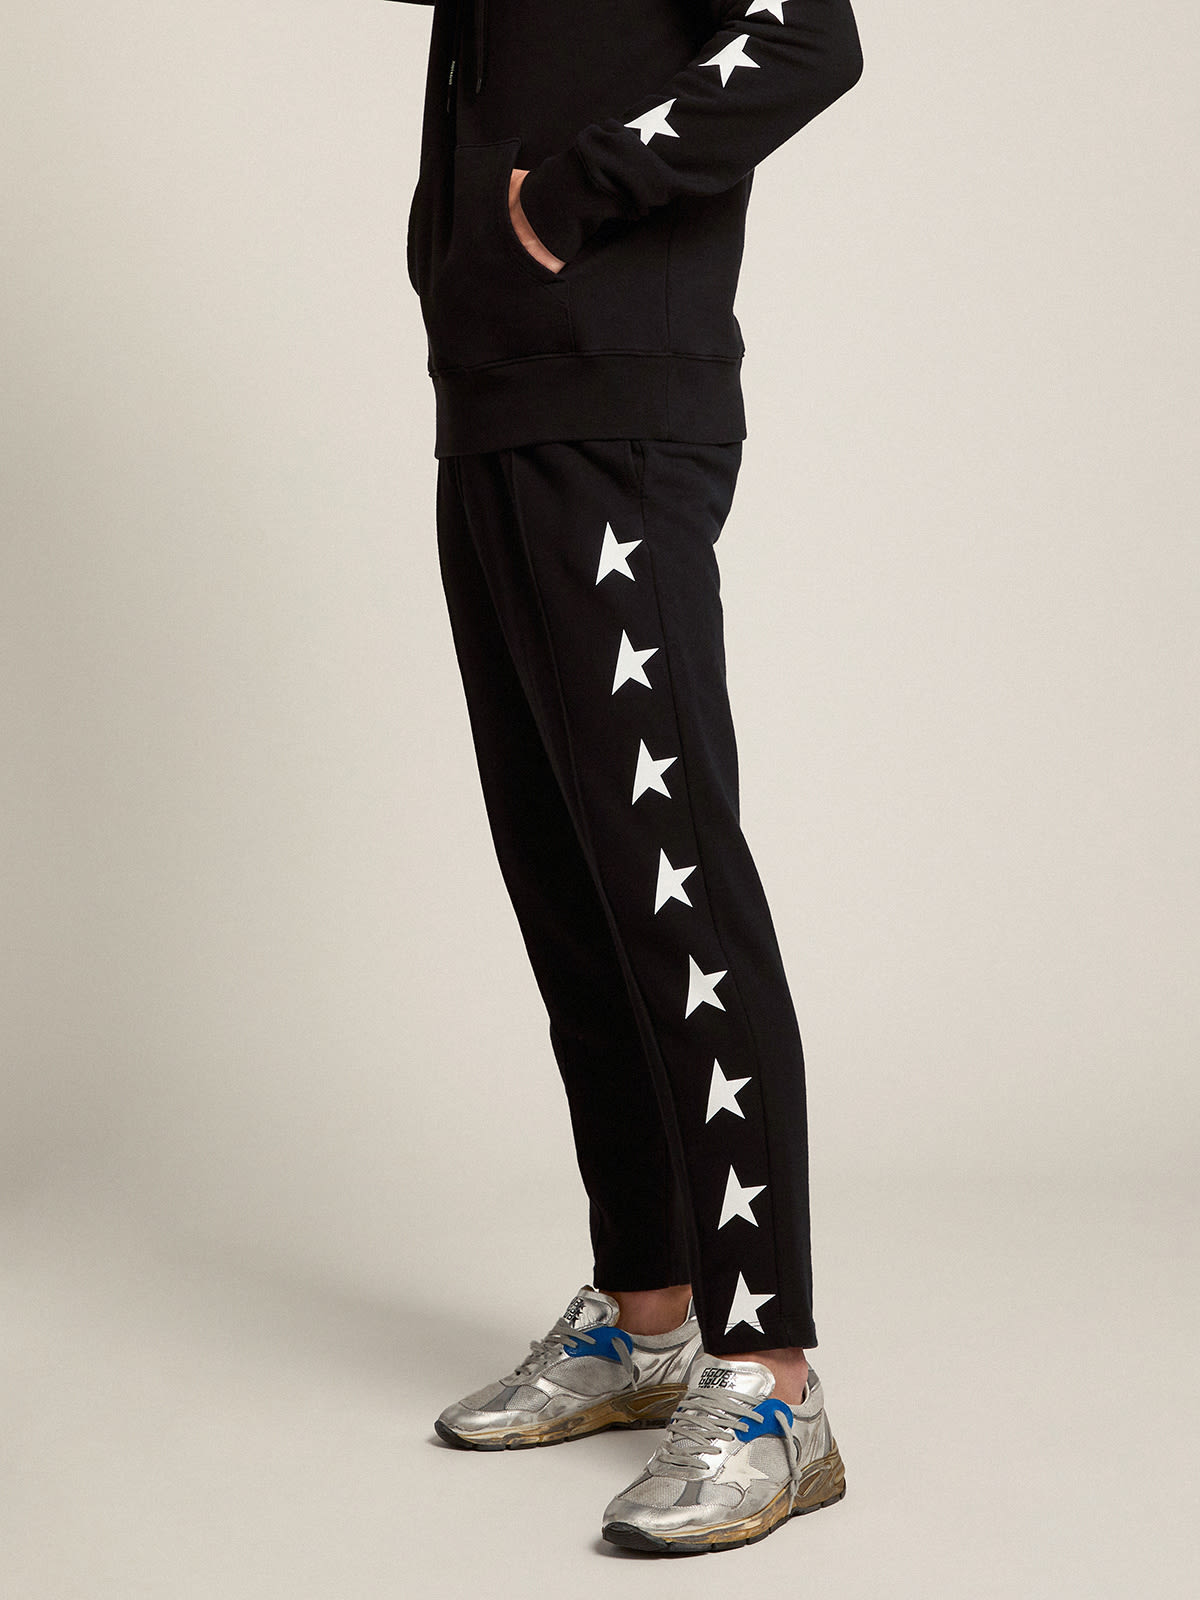 Golden Goose - Pantalon de jogging homme noir avec étoiles blanches in 